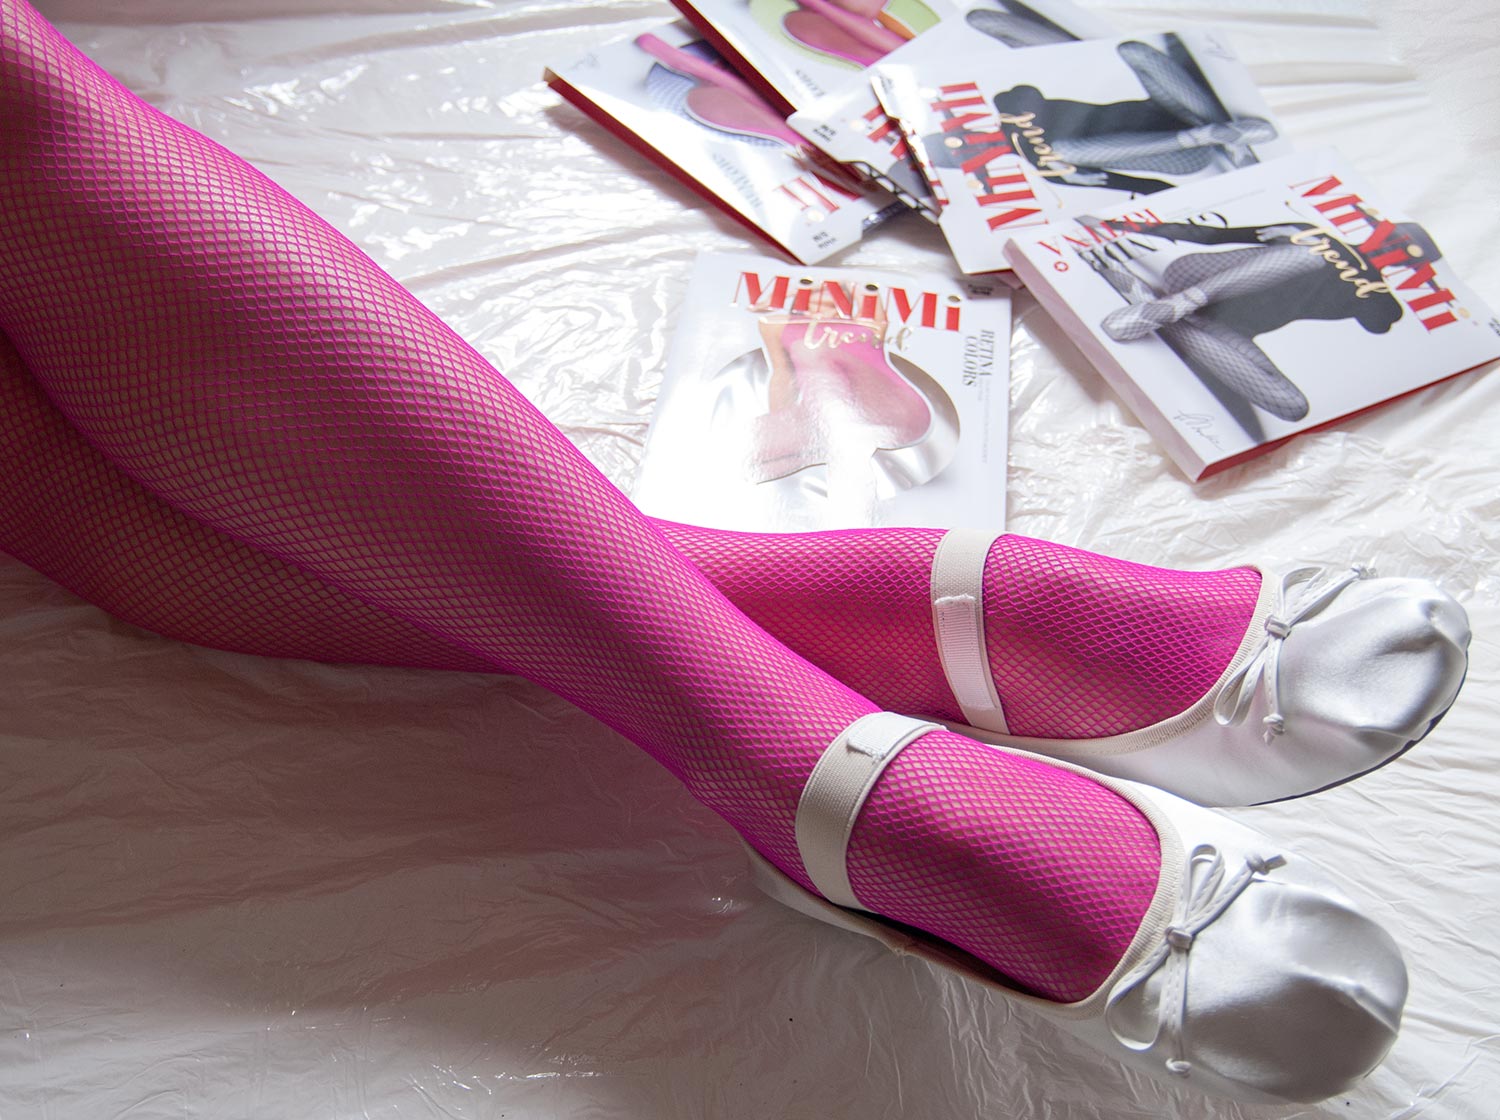 Колготки в сетку MiNiMi Trend Retina Colors цвета фуксия, атласные балетки. ©bracatus.com